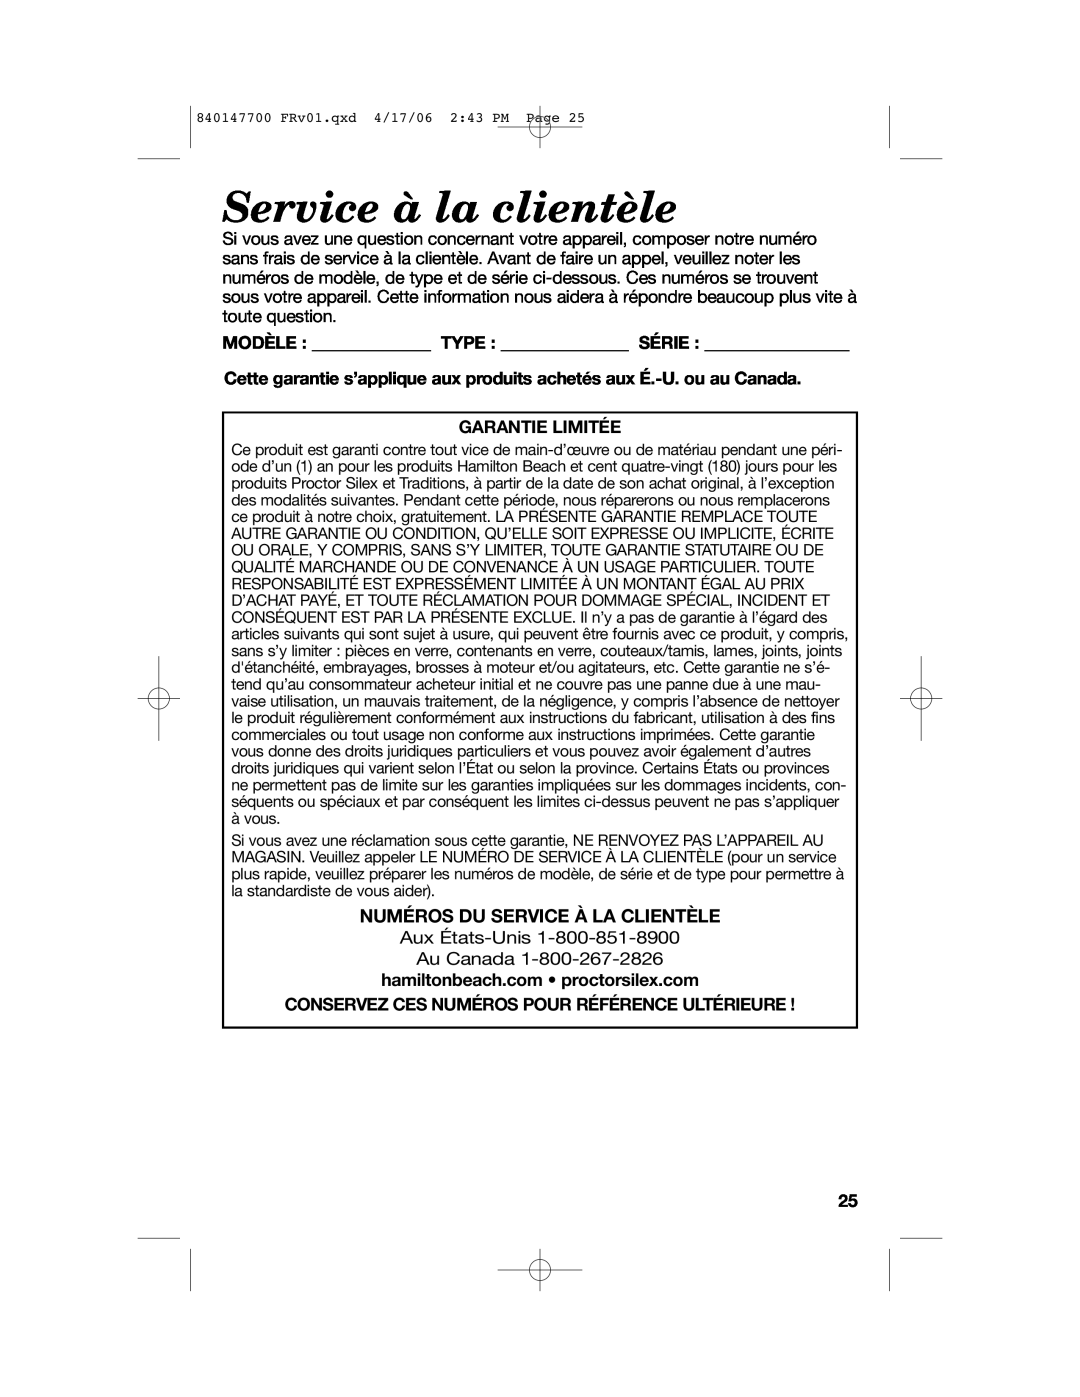 Hamilton Beach 31180 manual Service à la clientèle, Numéros Du Service À La Clientèle, Garantie Limitée 